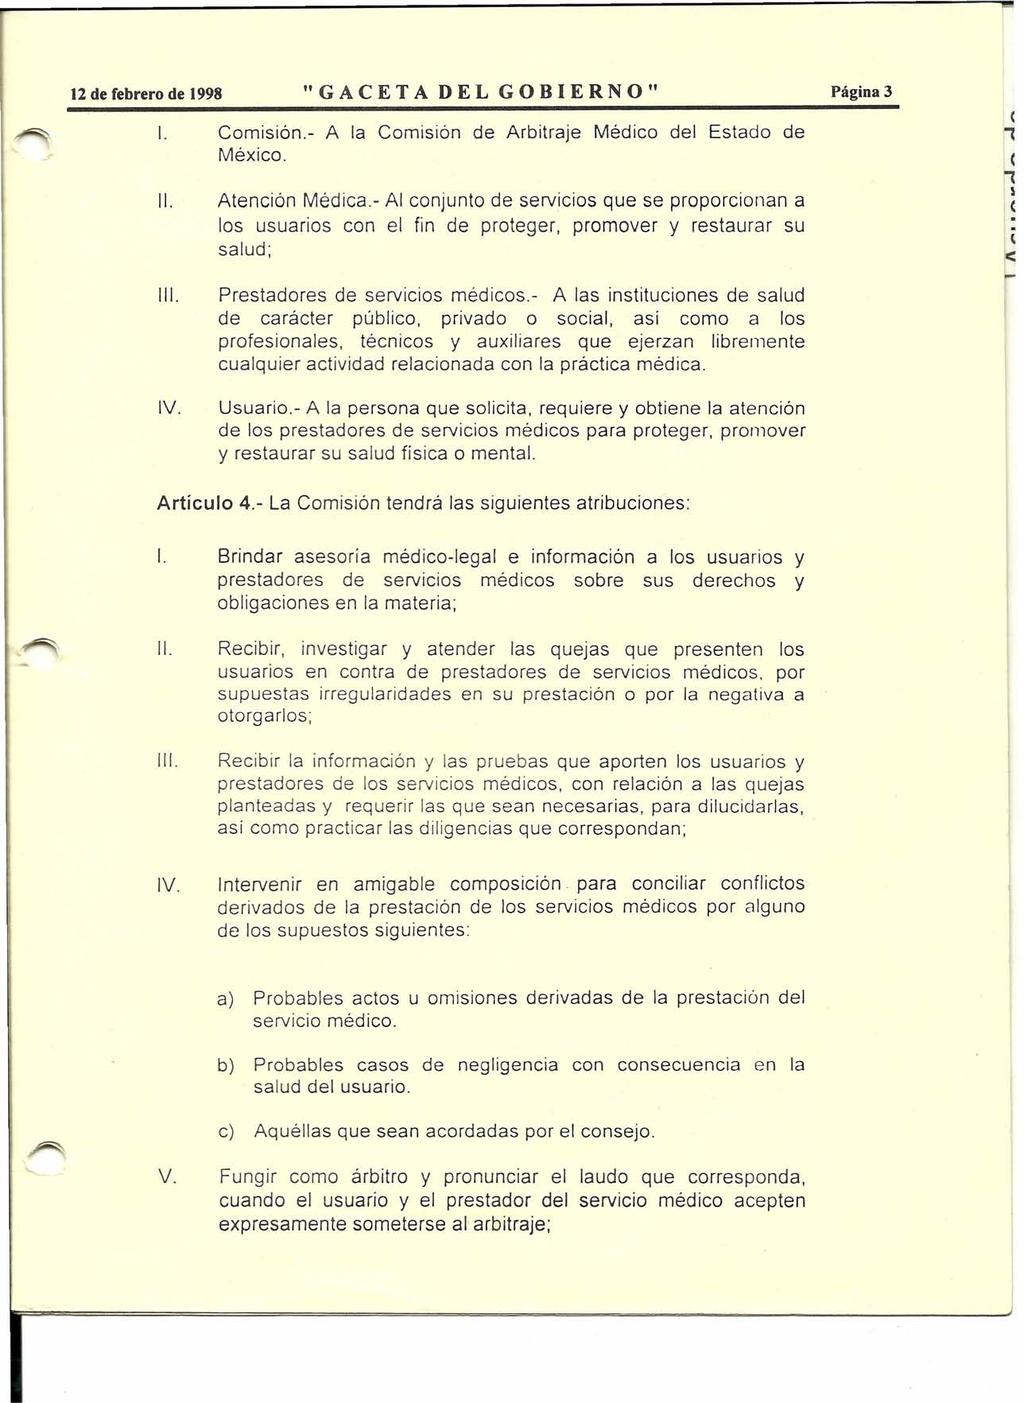 12 de febrero de 1998 "GACETA DEL GOBIERNO" Página 3 1. Comisión.- A la Comisión de Arbitraje Médico del Estado de México. 11. Atención Médica.